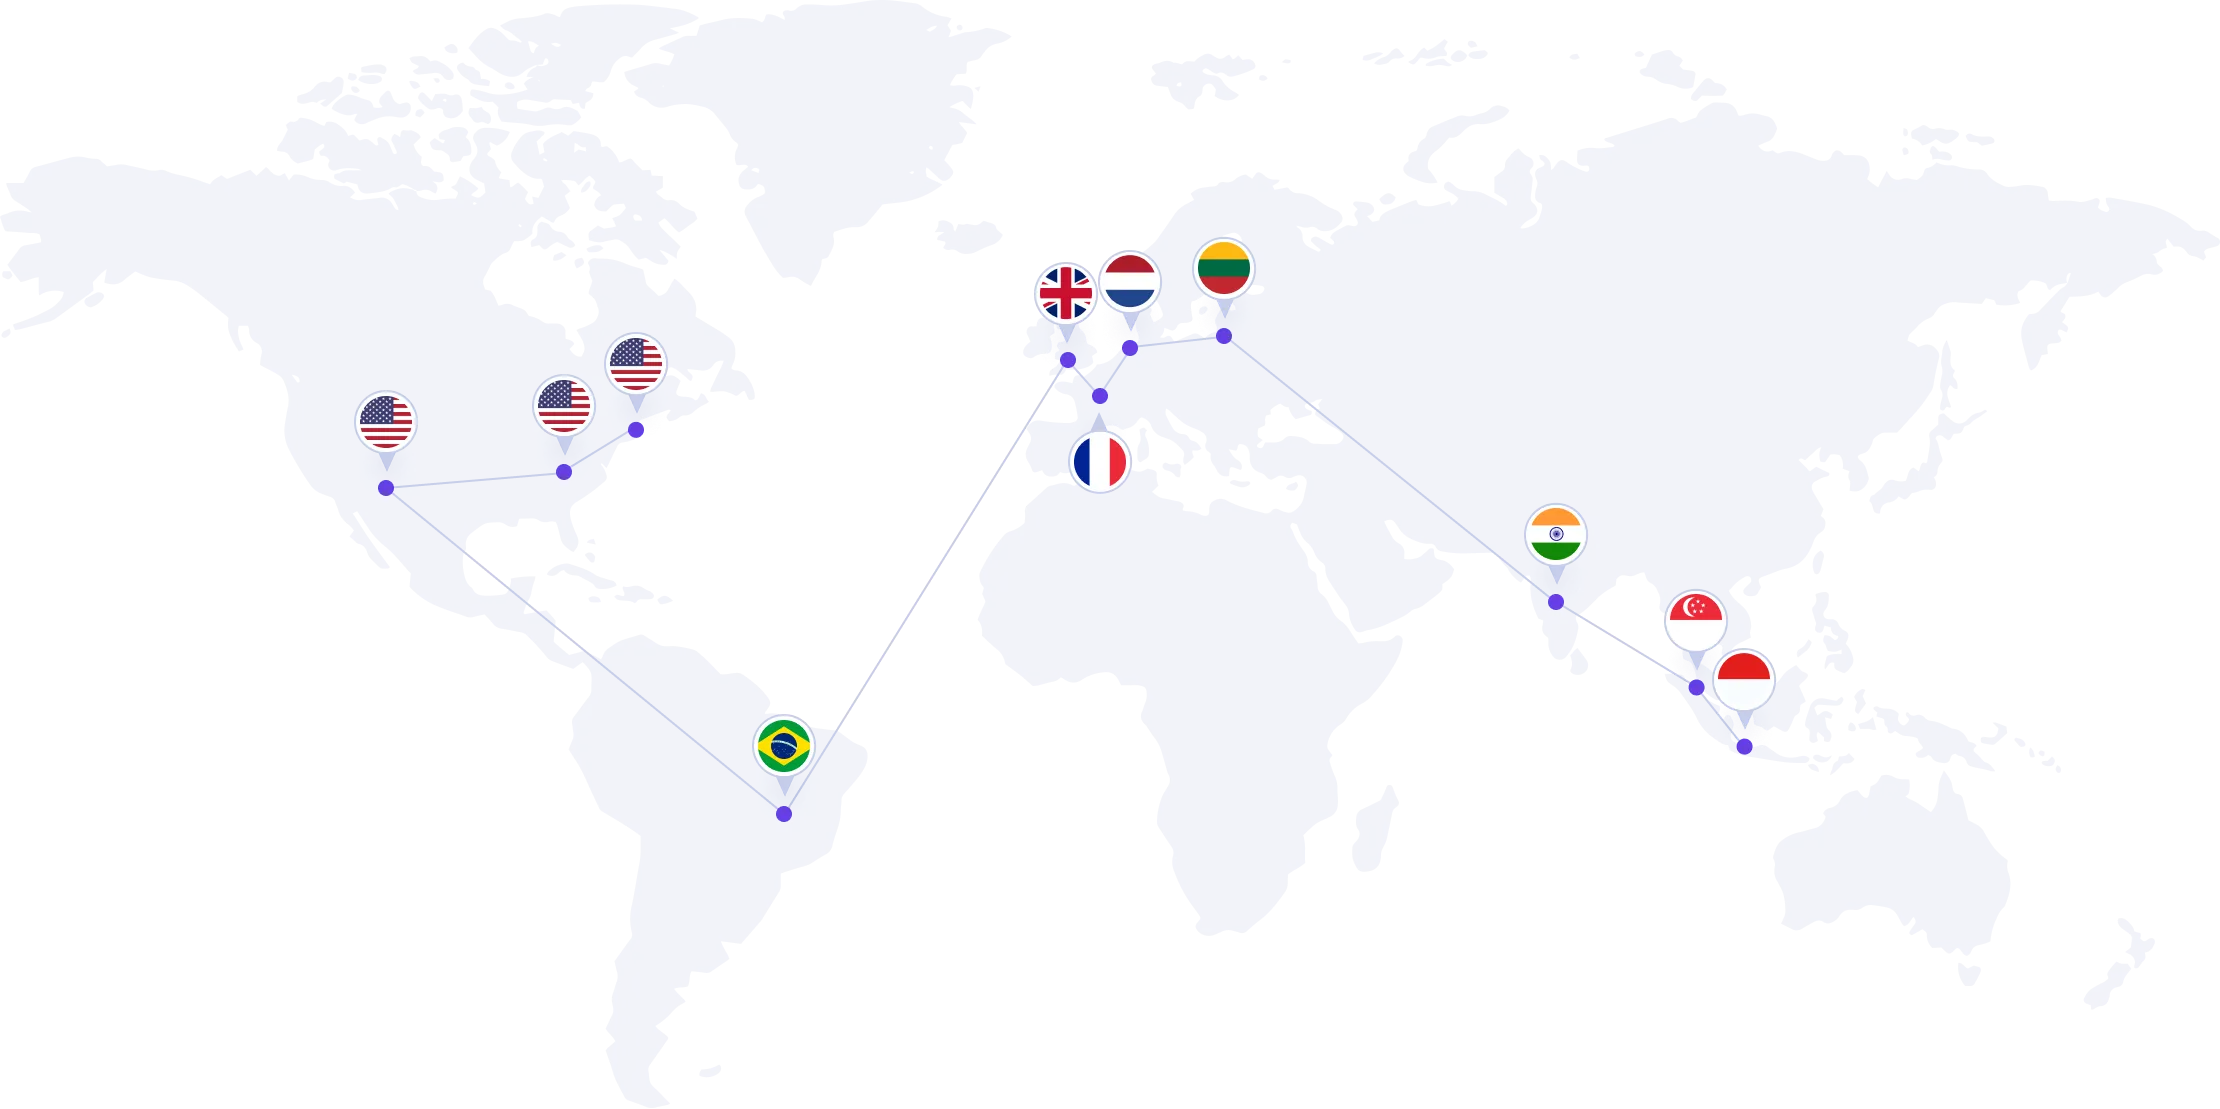 दुनिया भर में स्थित डेटा सेंटर